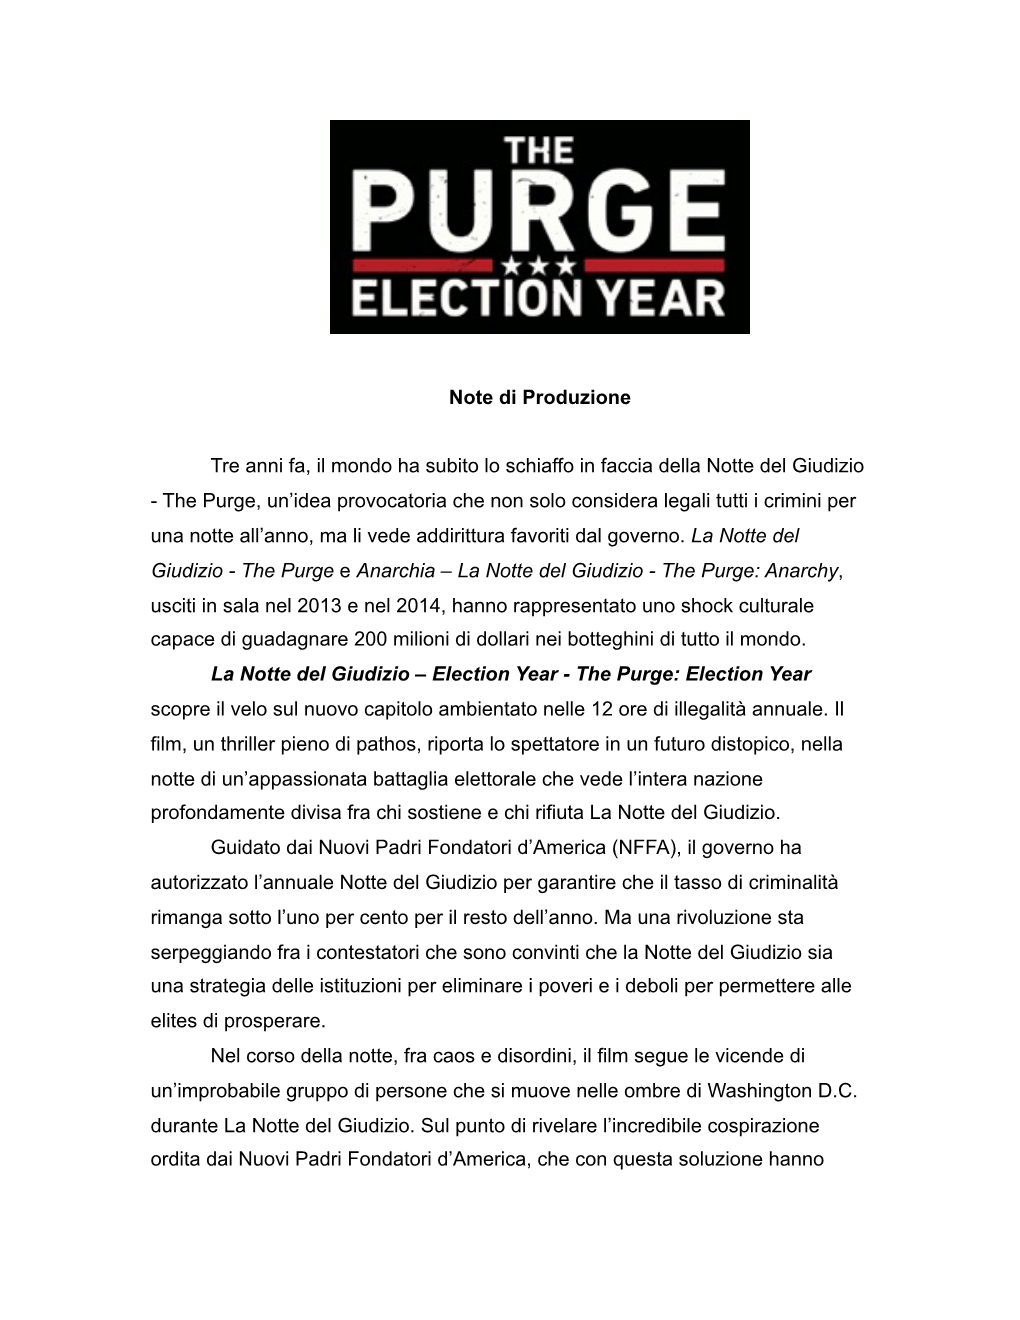 Election Year - the Purge: Election Year Scopre Il Velo Sul Nuovo Capitolo Ambientato Nelle 12 Ore Di Illegalità Annuale